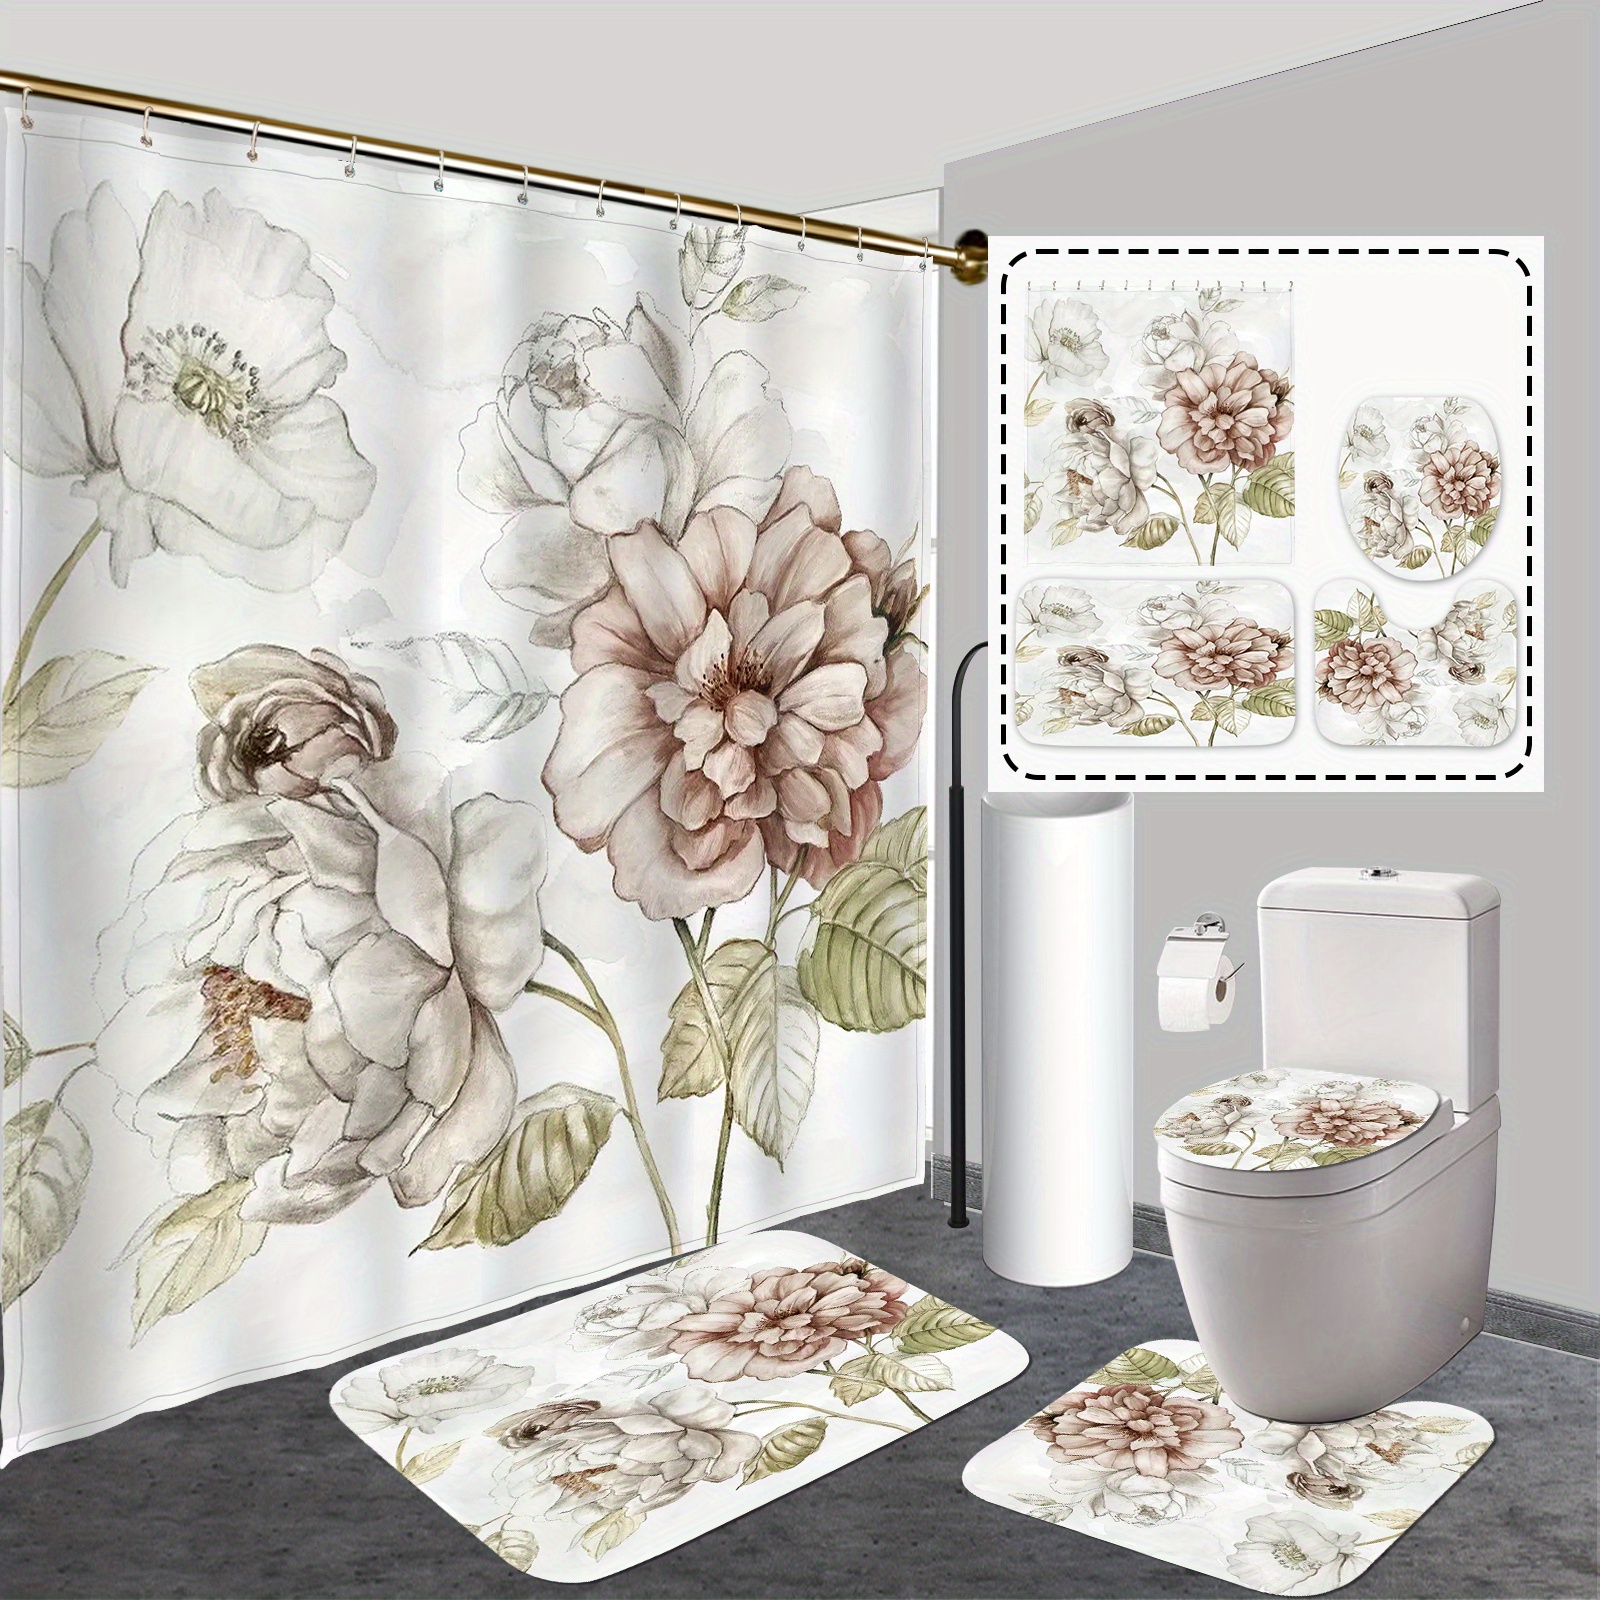 1 cortina de ducha impermeable con estampado de flores vintage y